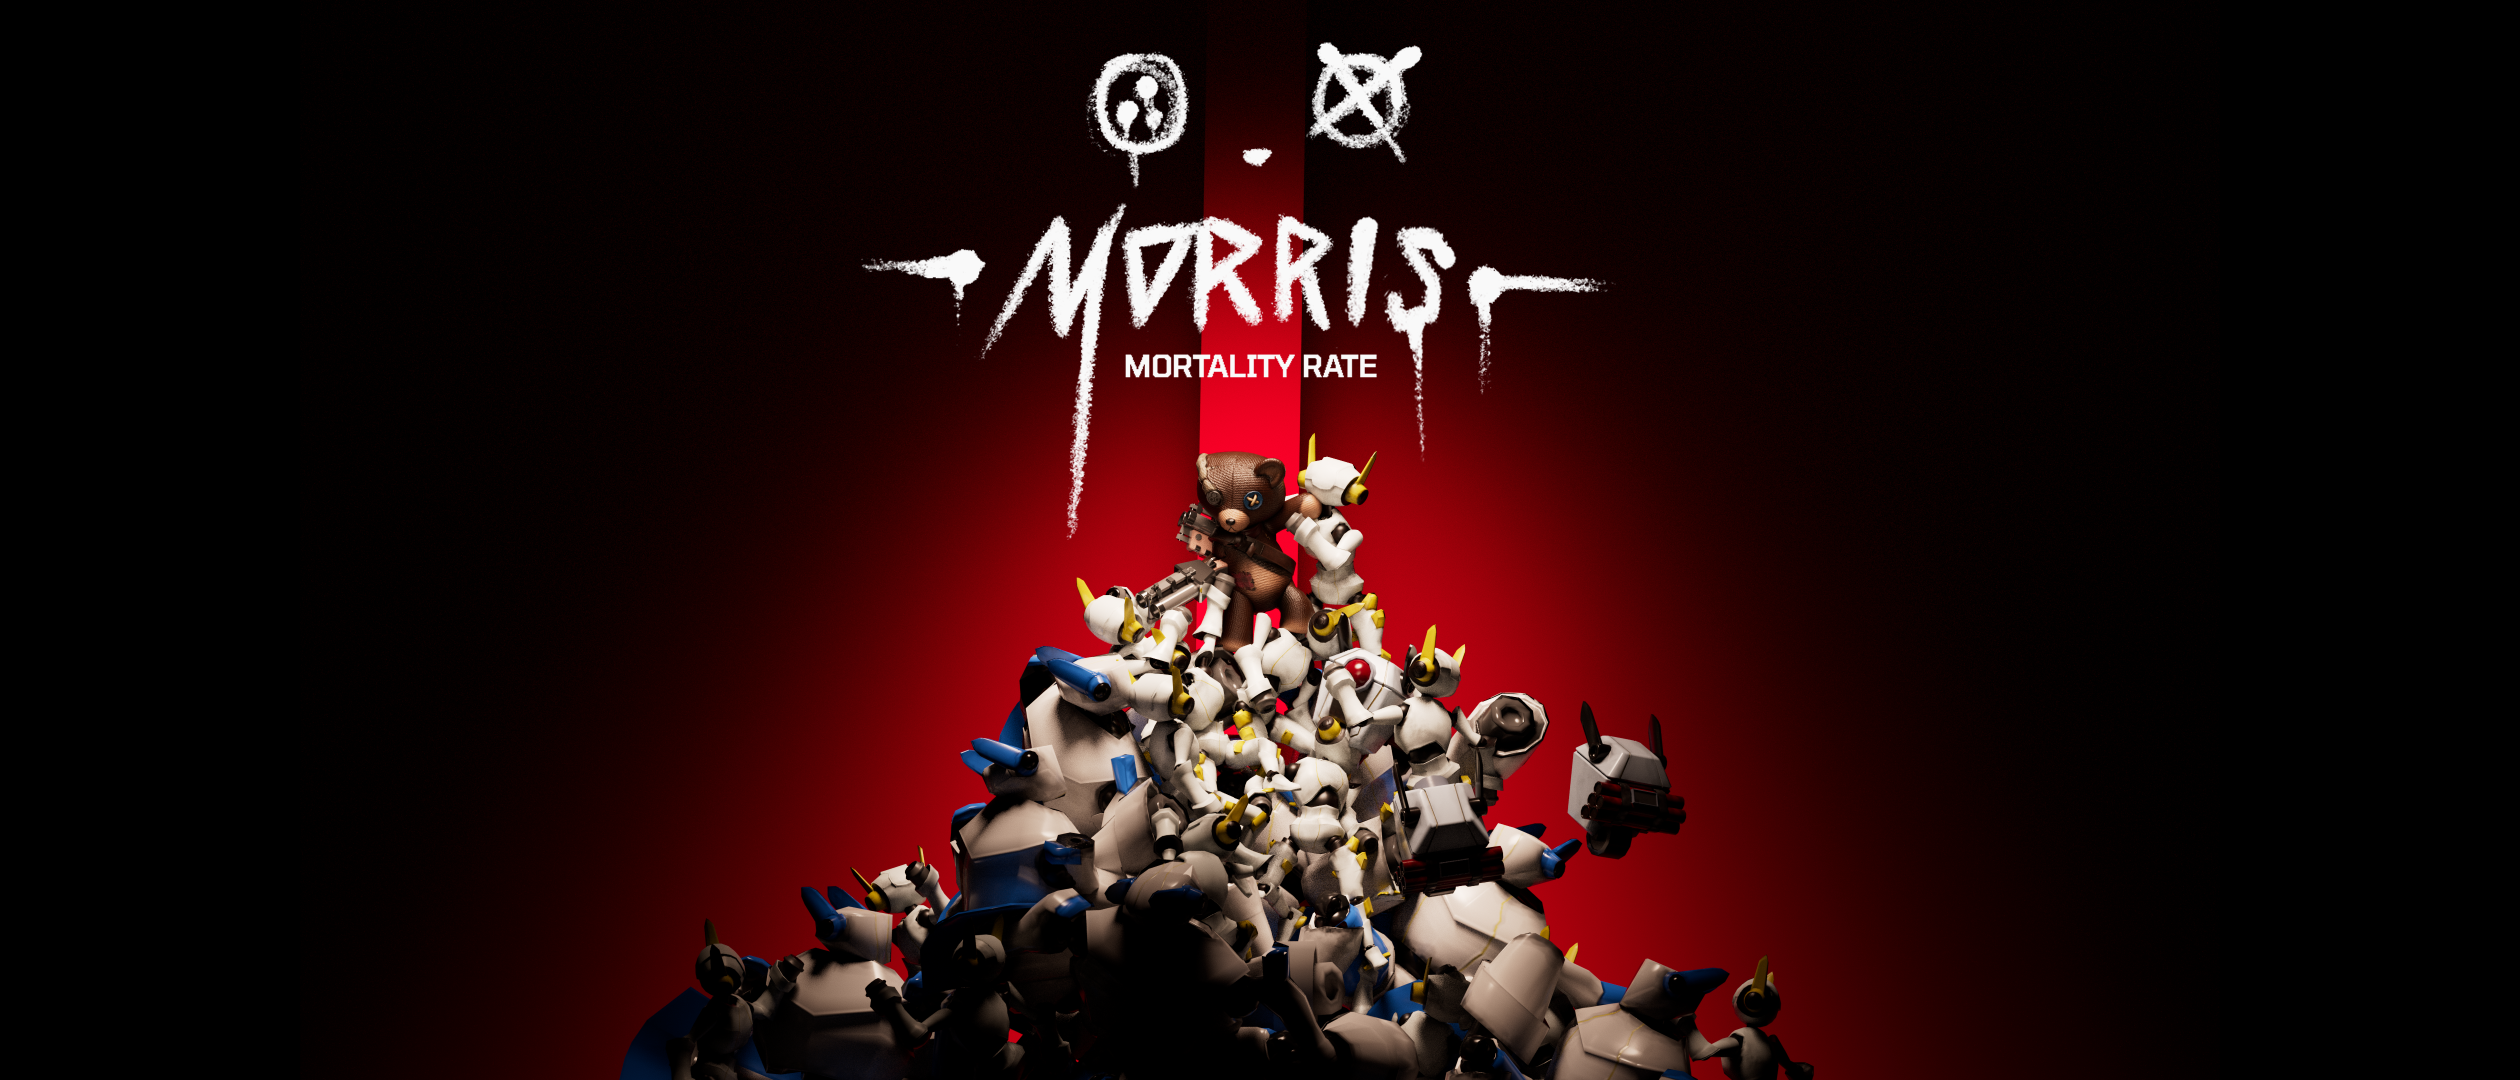 Morris: Mortality Rate